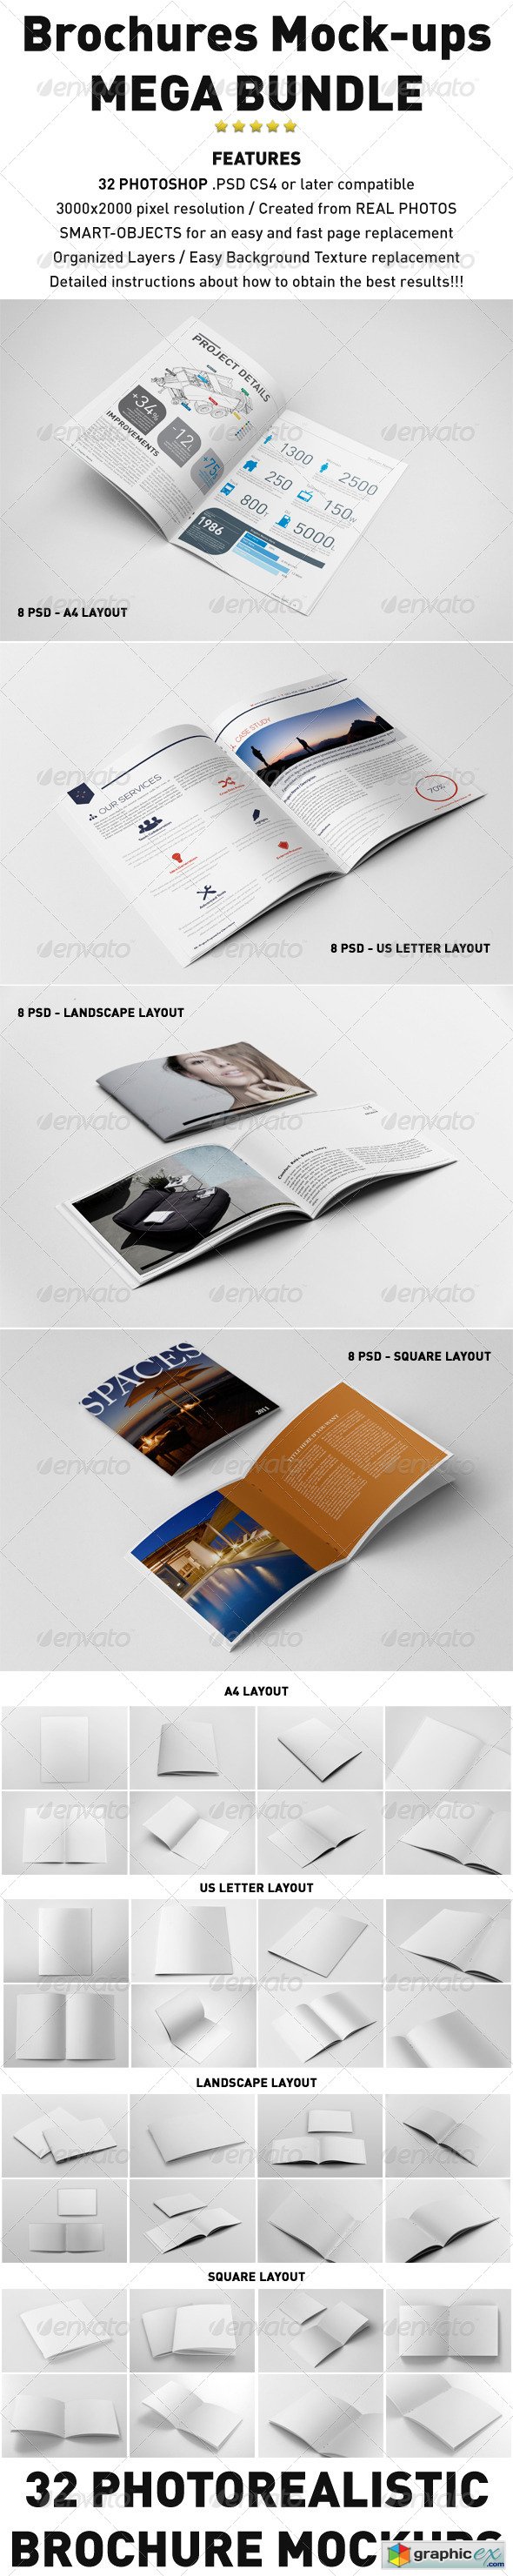 Photorealistic Brochures Mockups Bundle